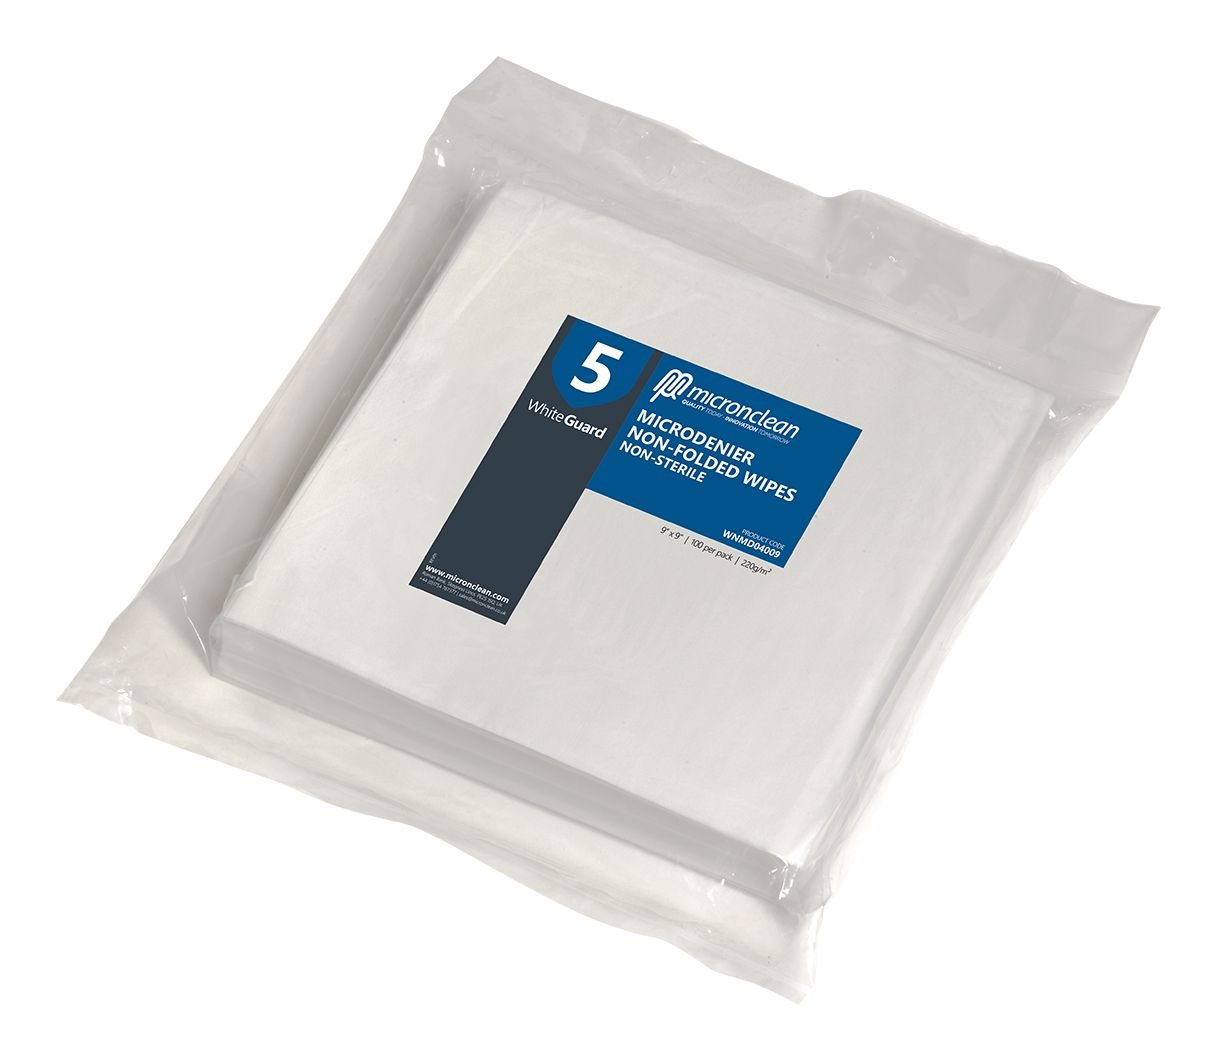 WhiteGuard 5 Microdenier Wipes Non-sterile [IN]